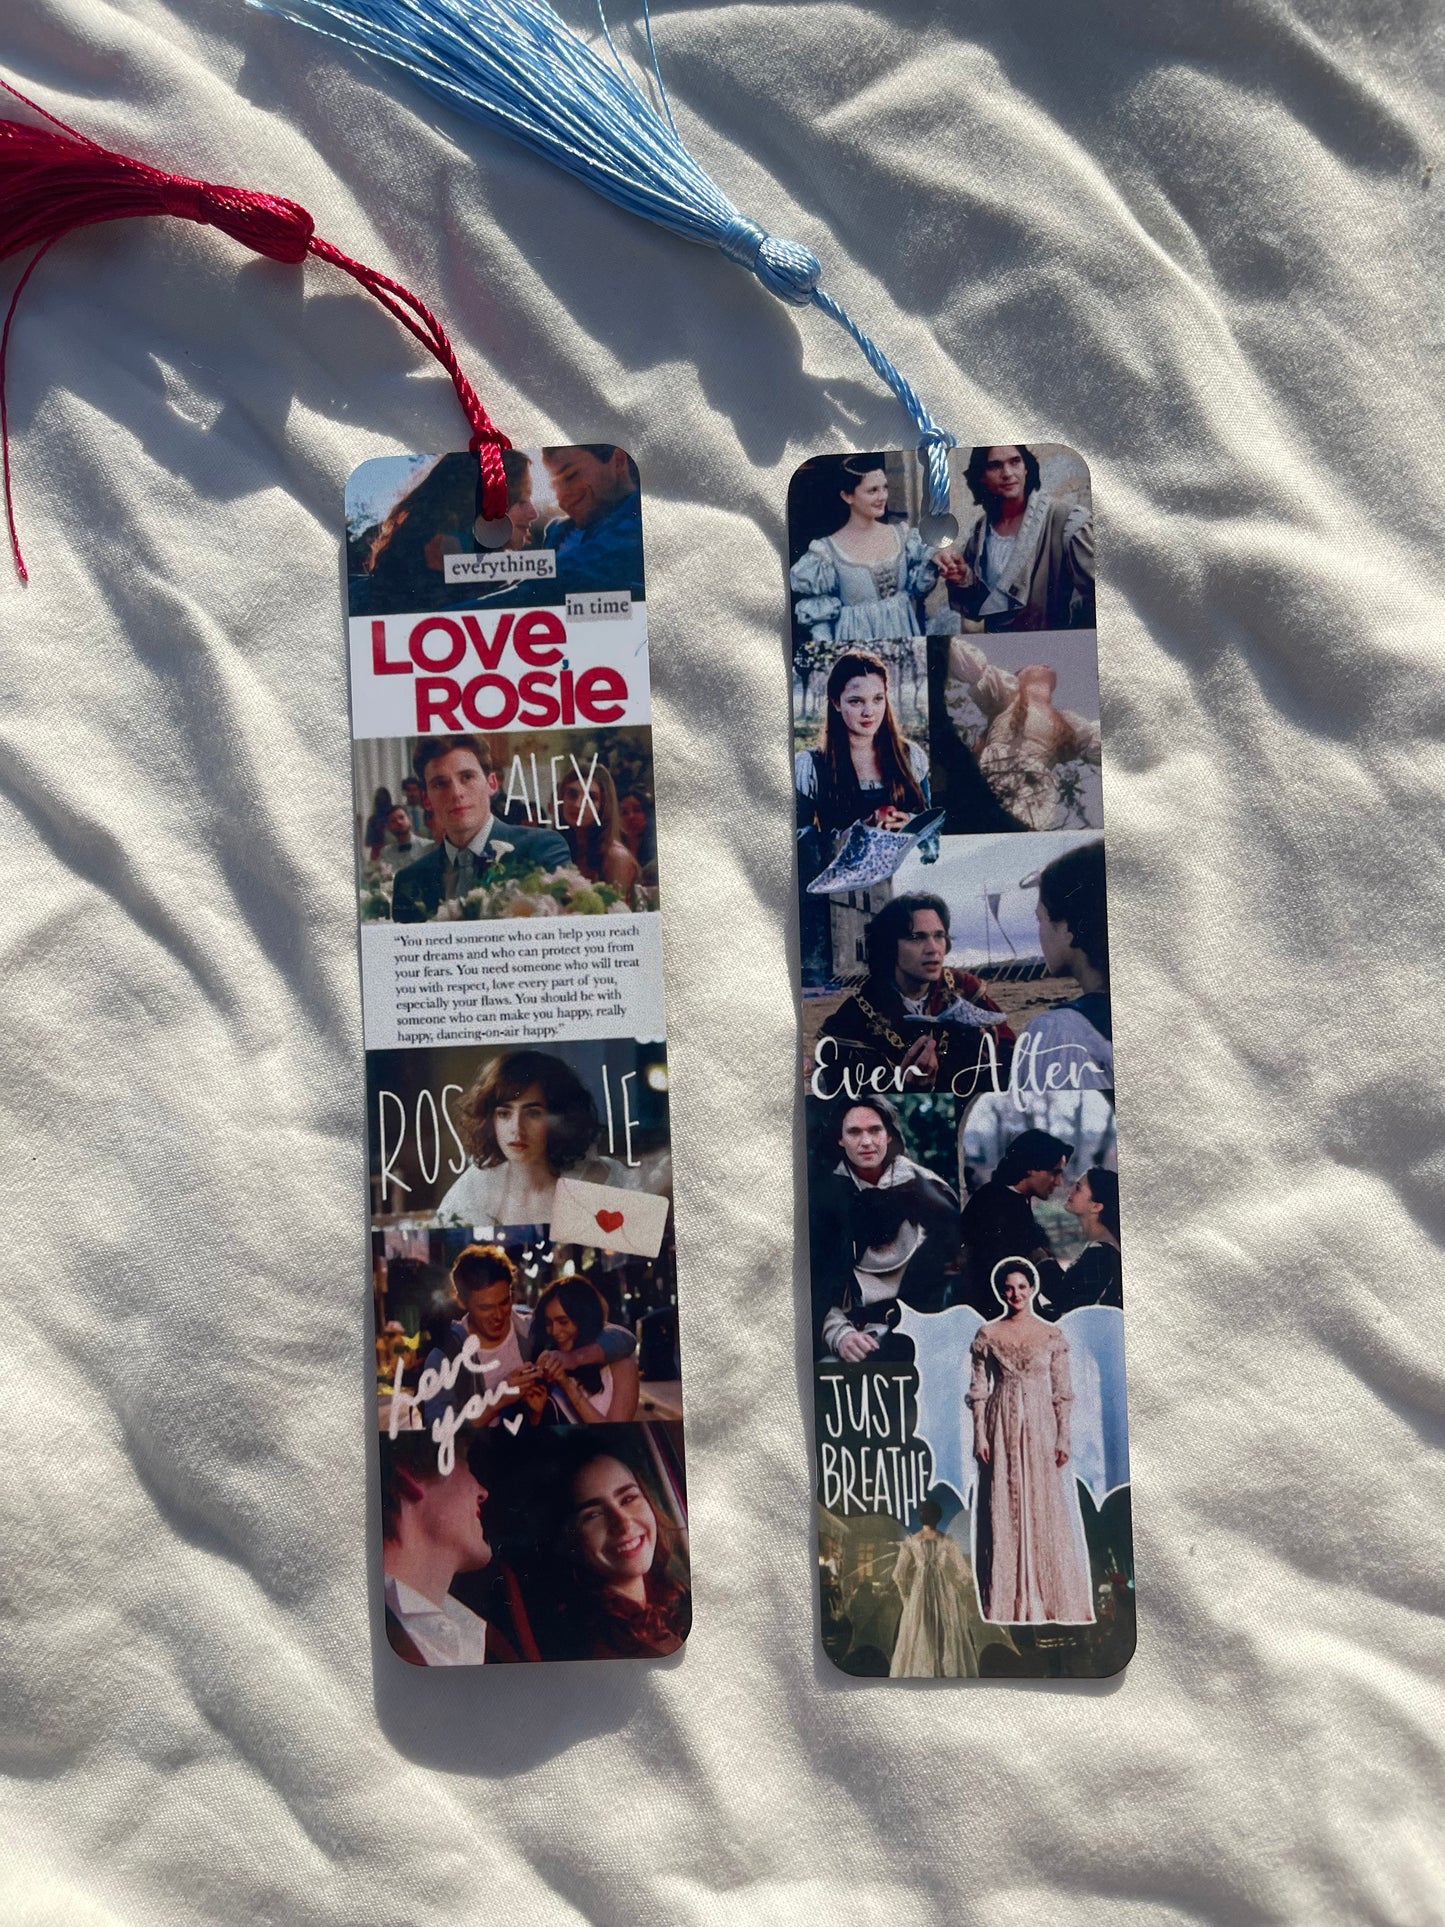 Rom Com bookmarks